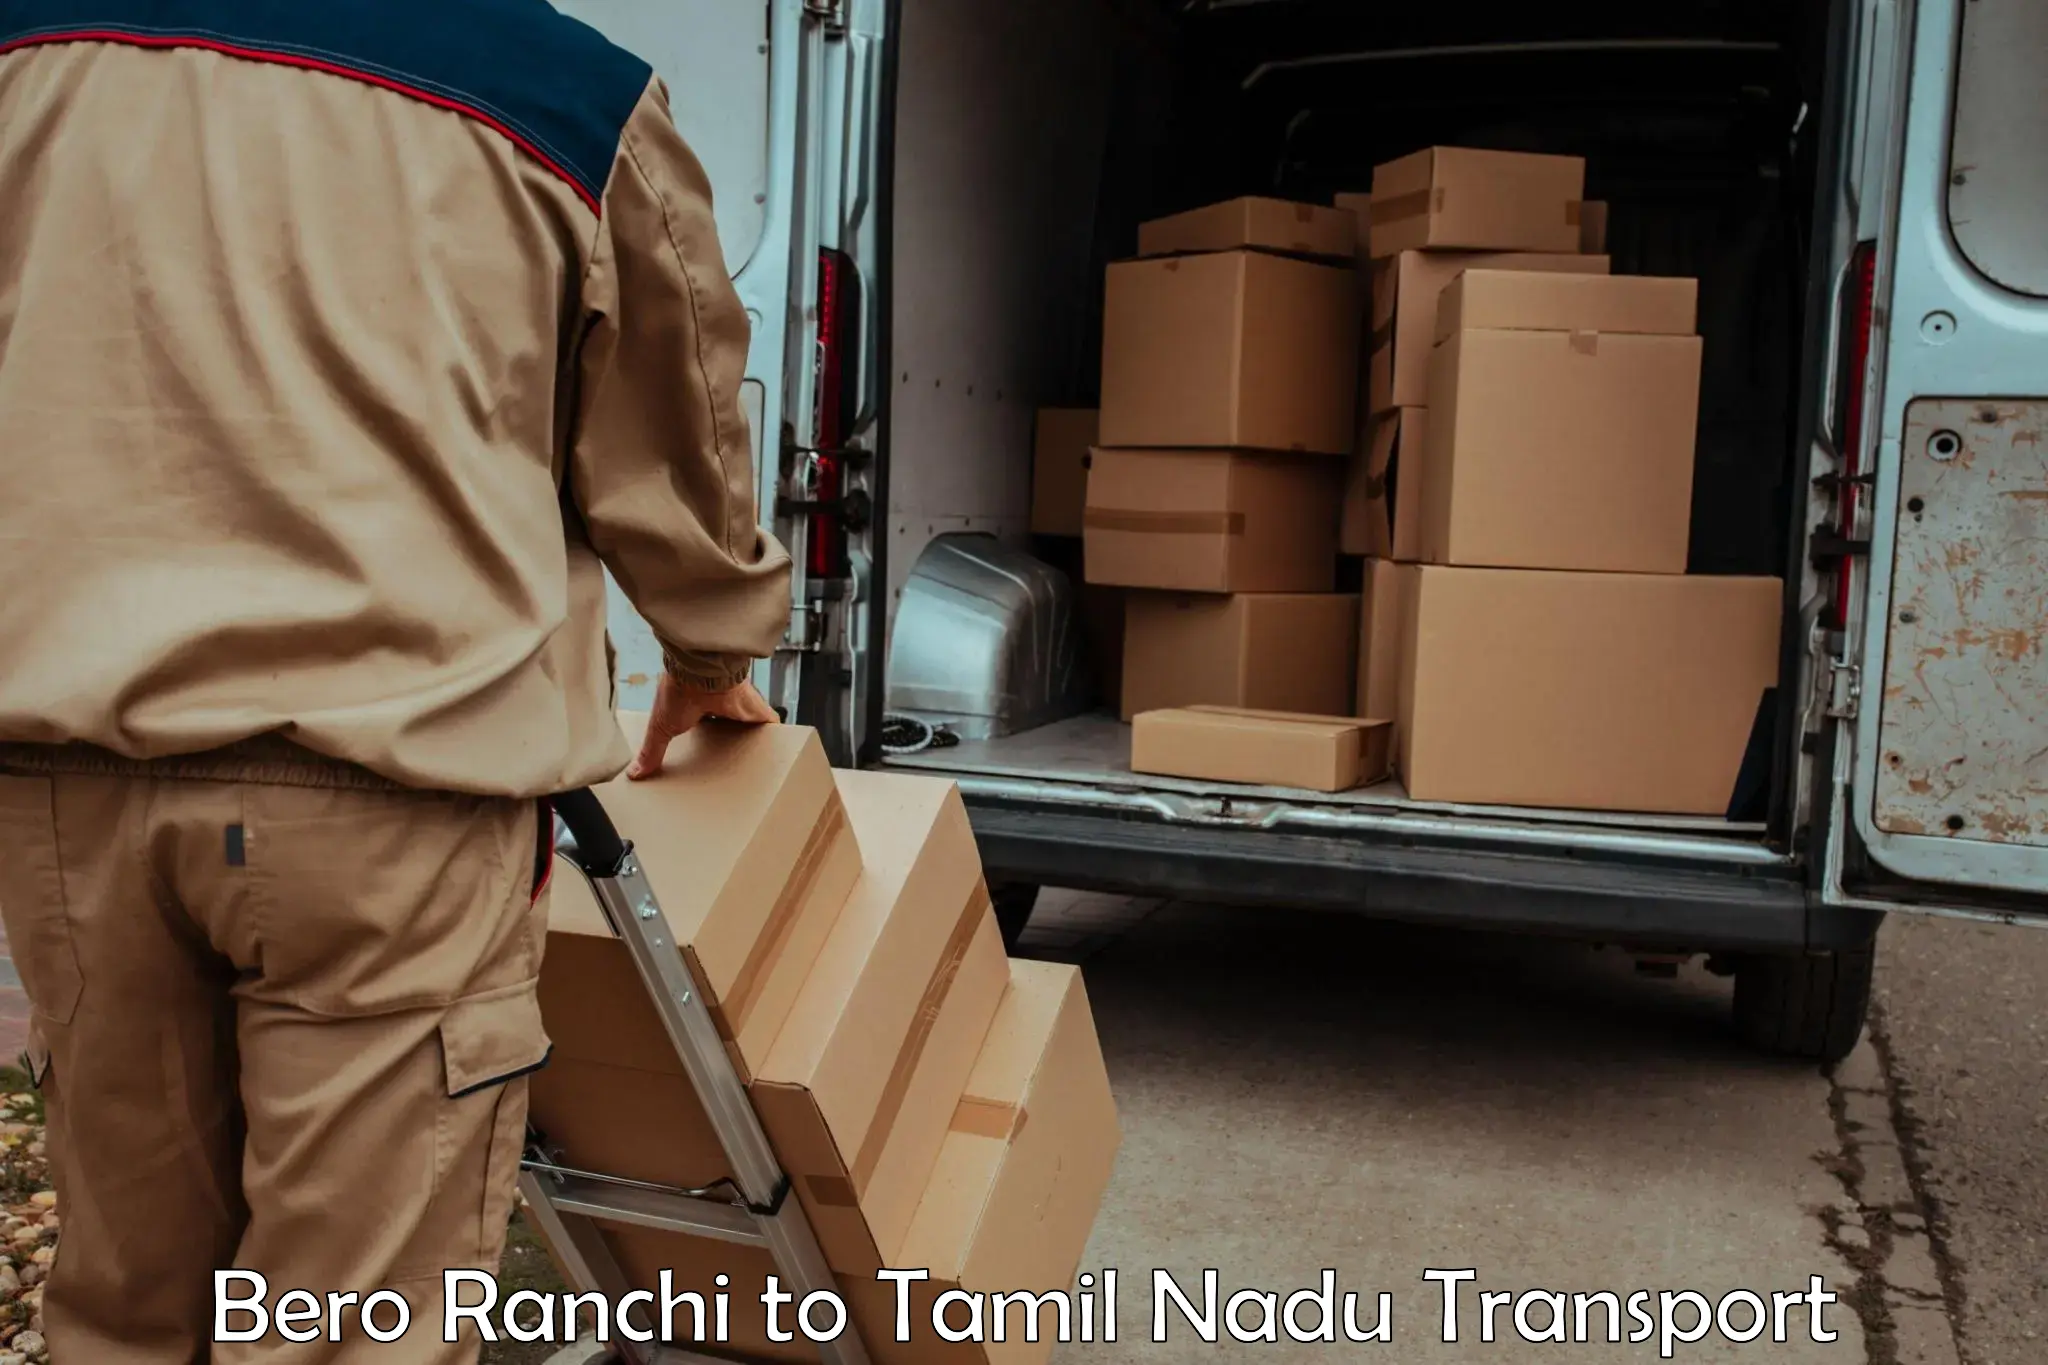 Furniture transport service Bero Ranchi to Karur